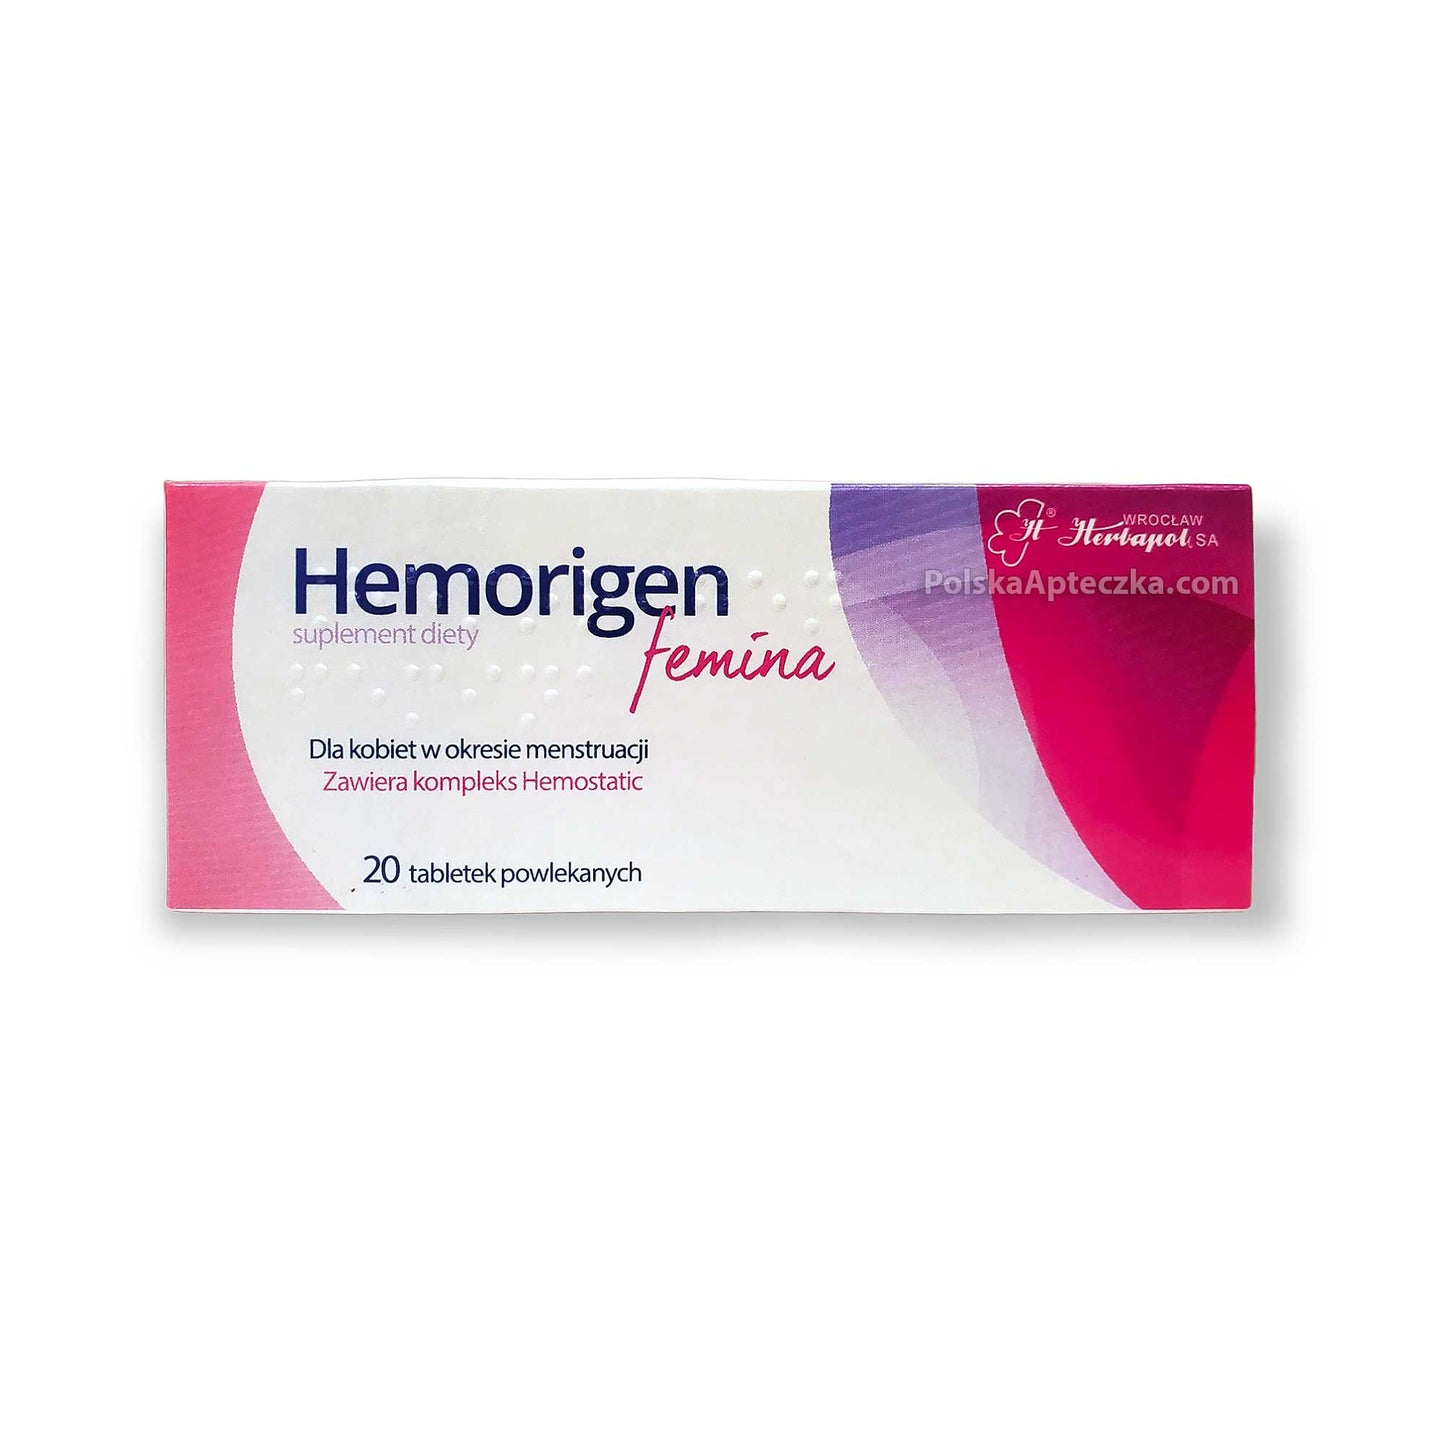 Hemorigen tablets